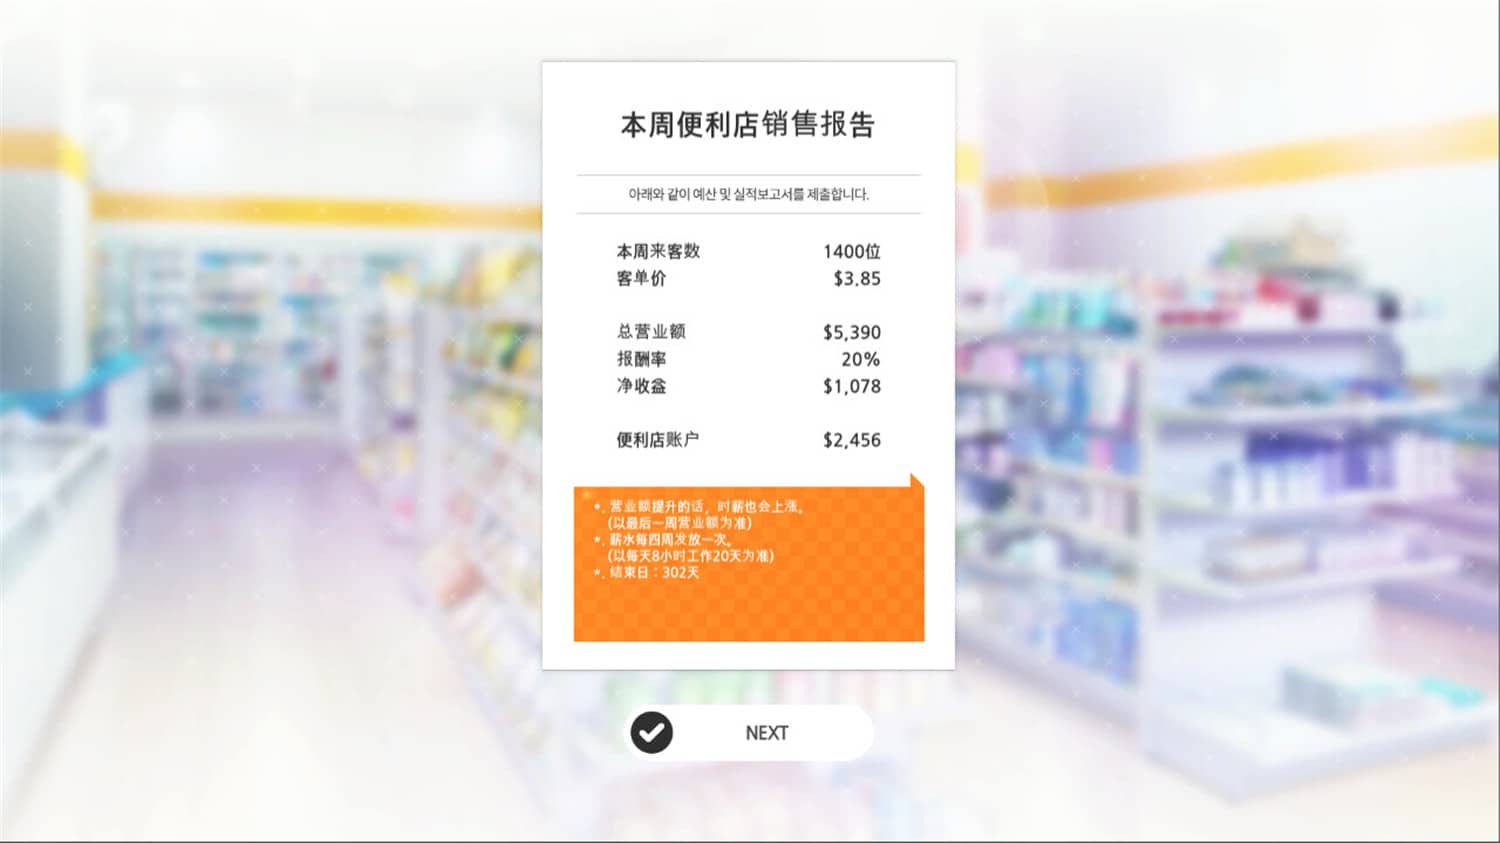 暧昧便利店/Some Some Convenience Store - 游戏杂货铺-游戏杂货铺